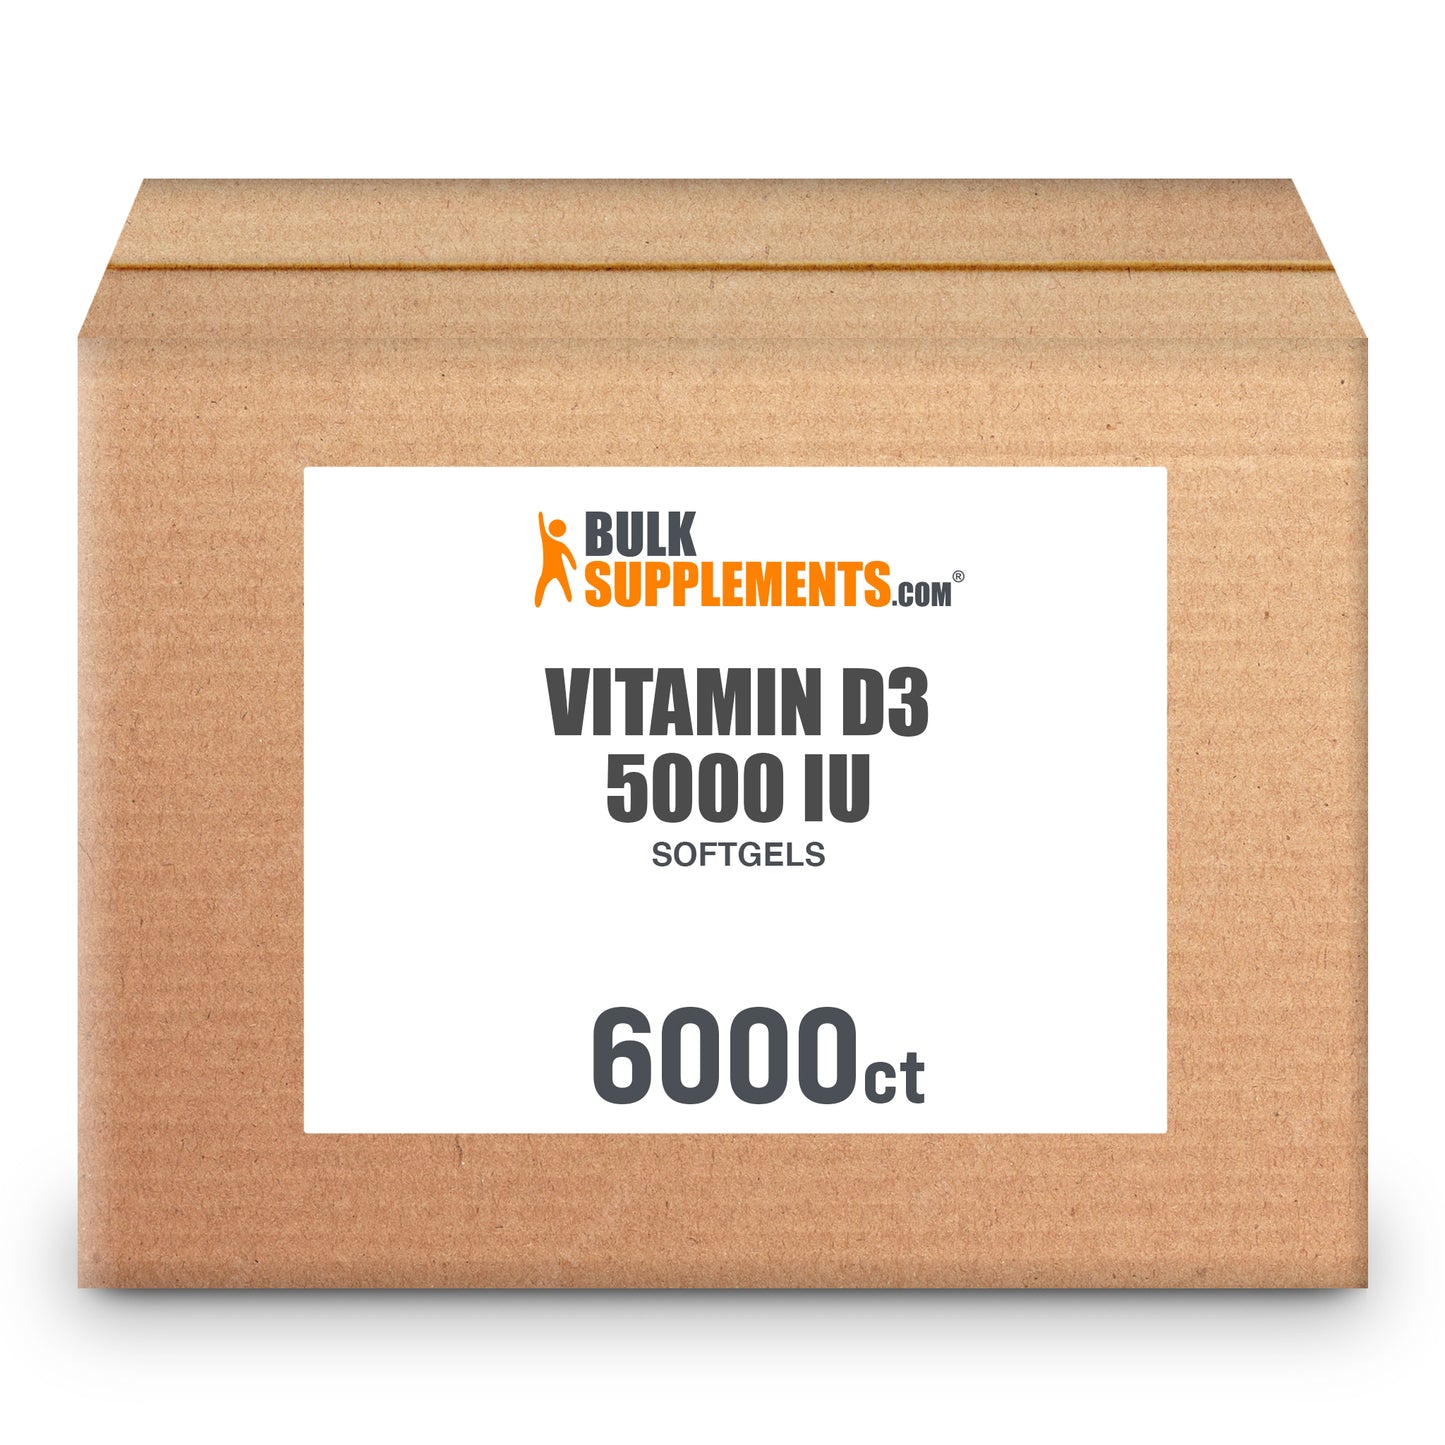 Vitamin D3 Softgels 5000 IU 6000 ct box